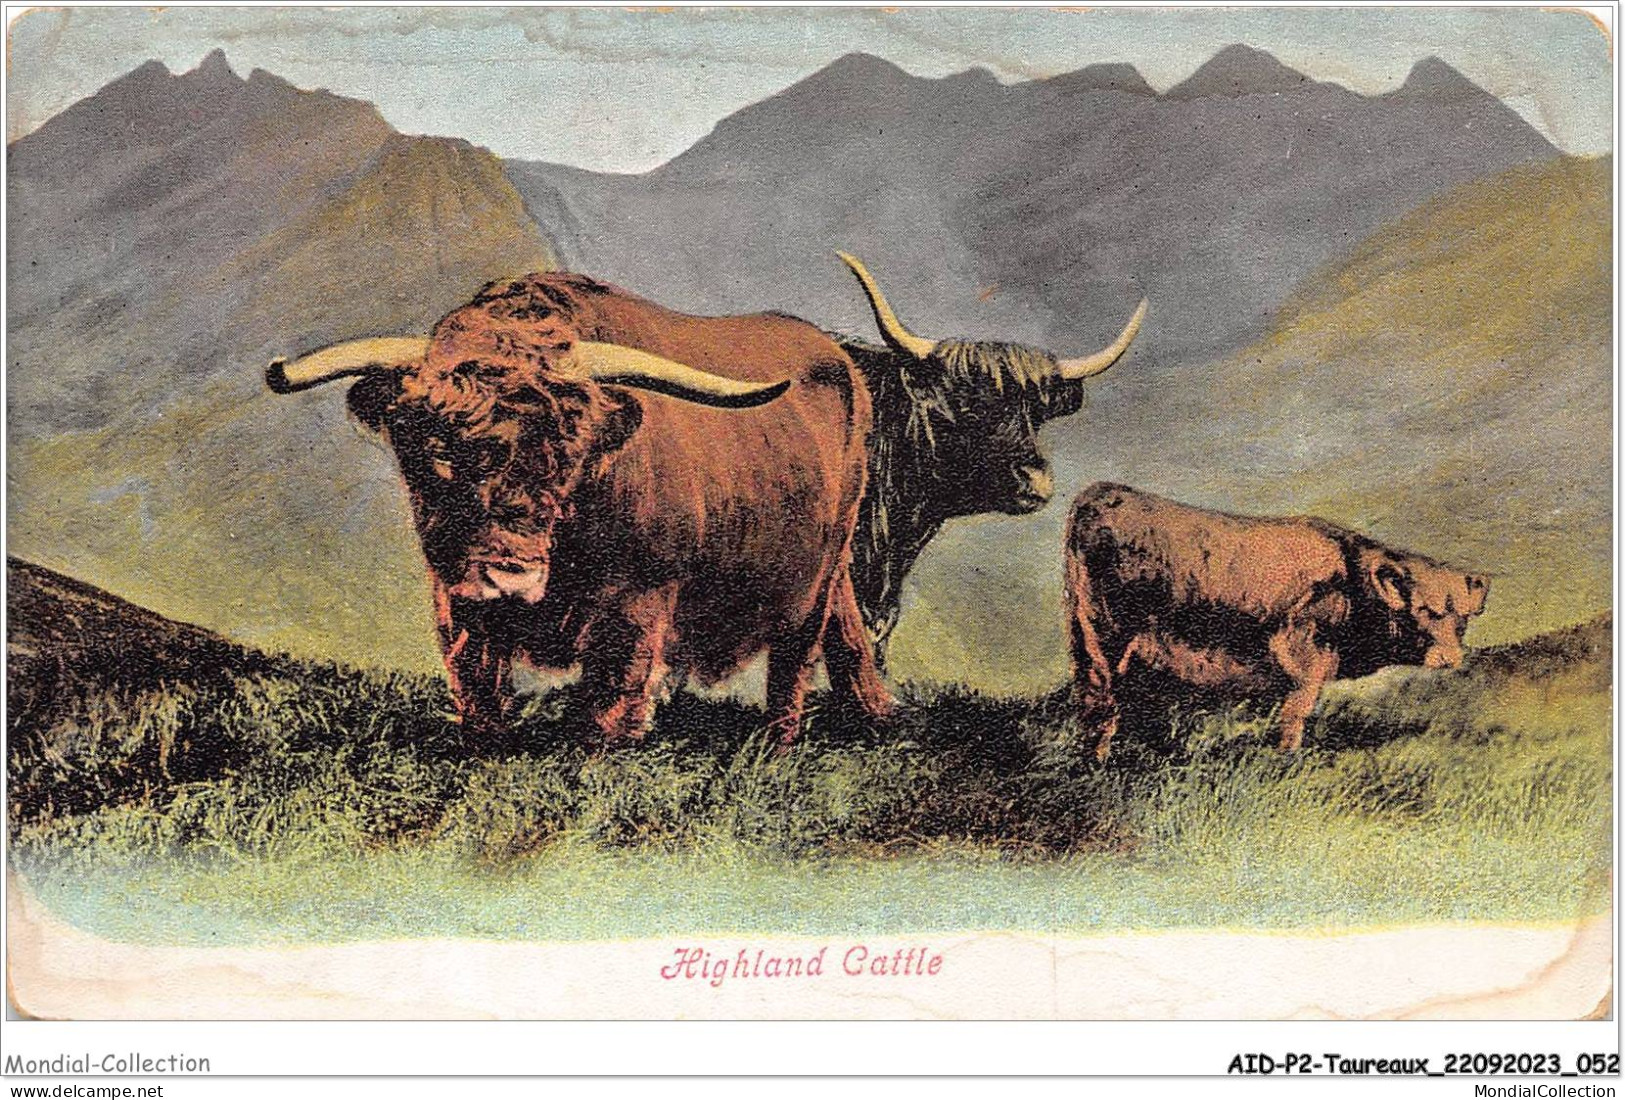 AIDP2-TAUREAUX-0100 - Highland Cattle  - Tauri